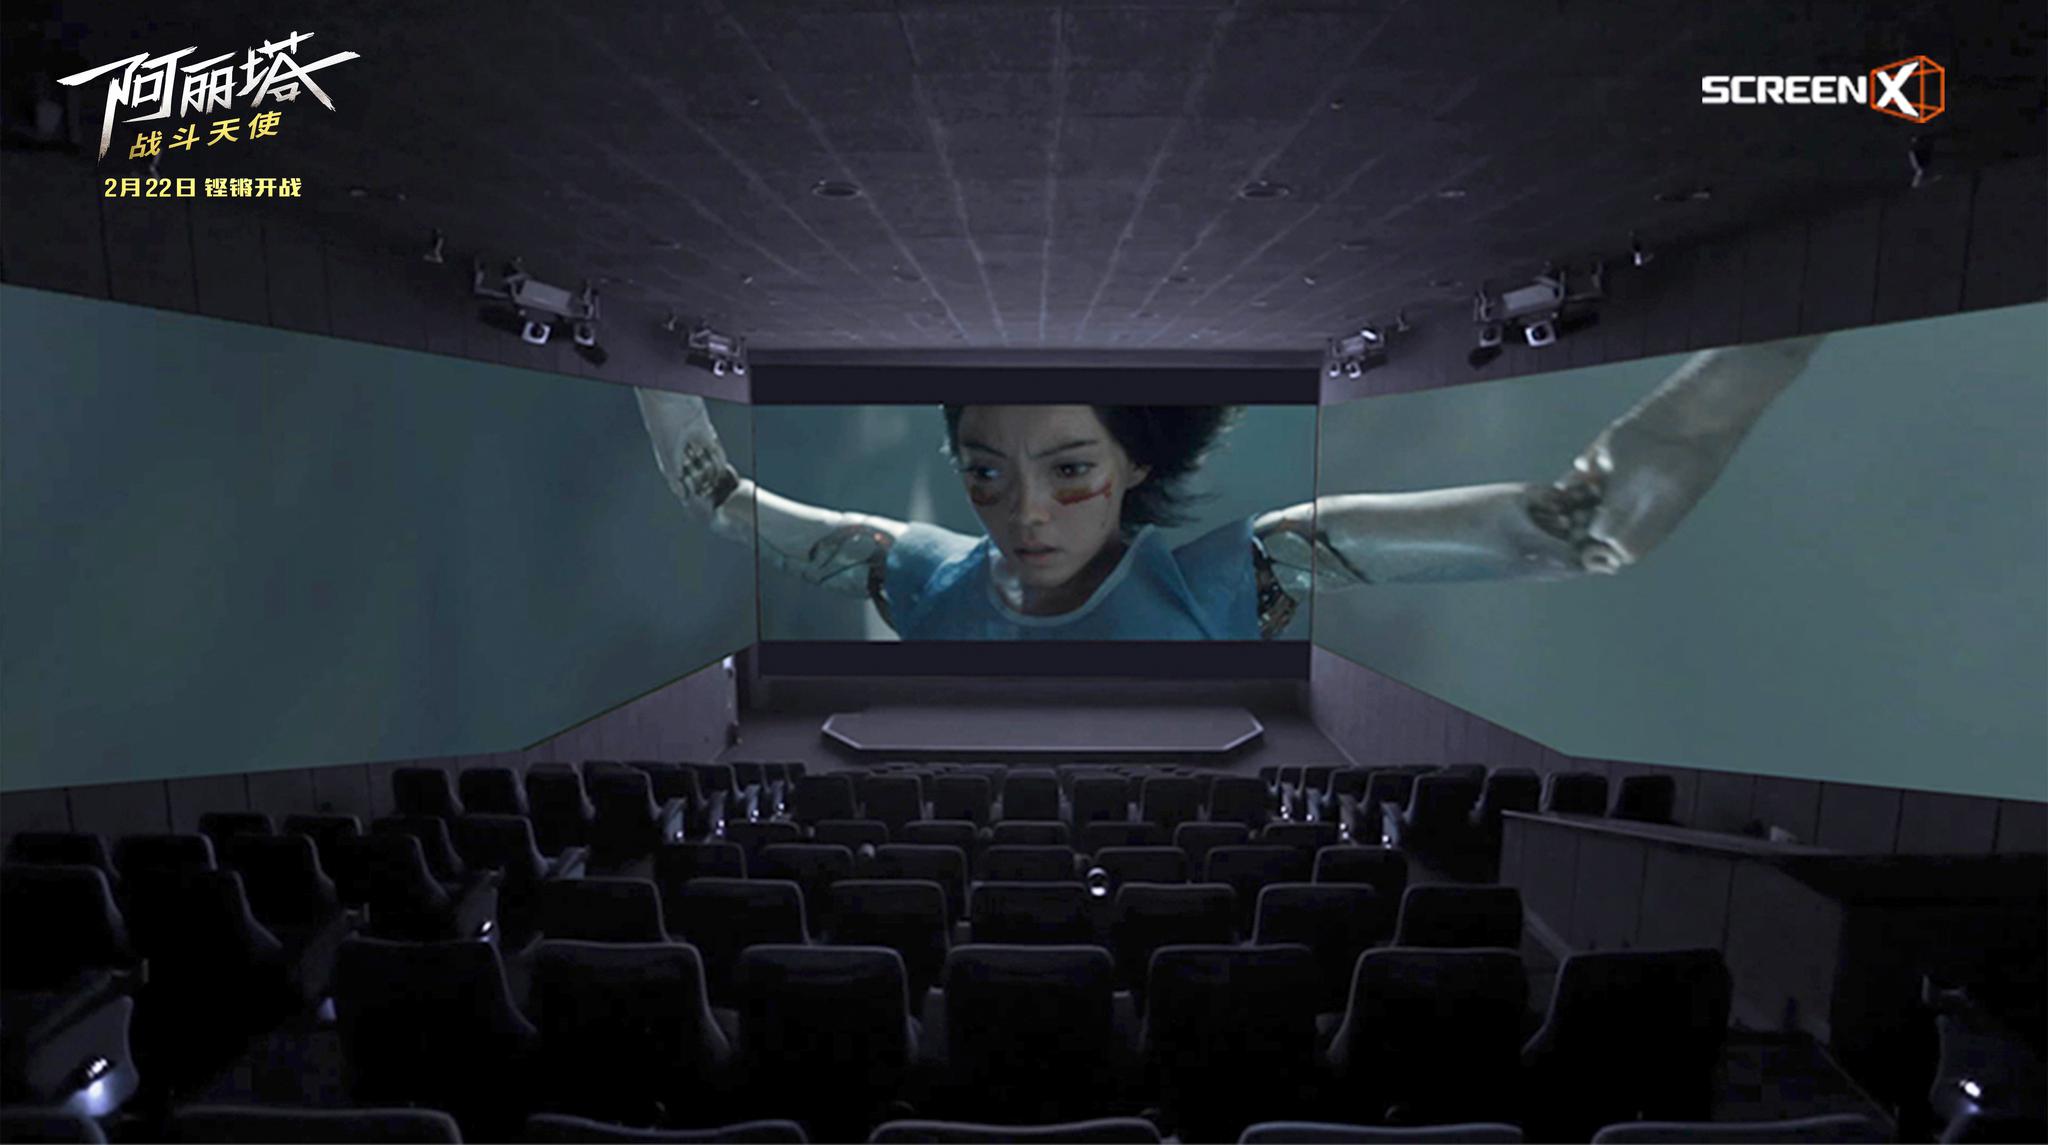 全球200家ScreenX影厅开业 阿丽塔 携多部大片给你三面特效体验